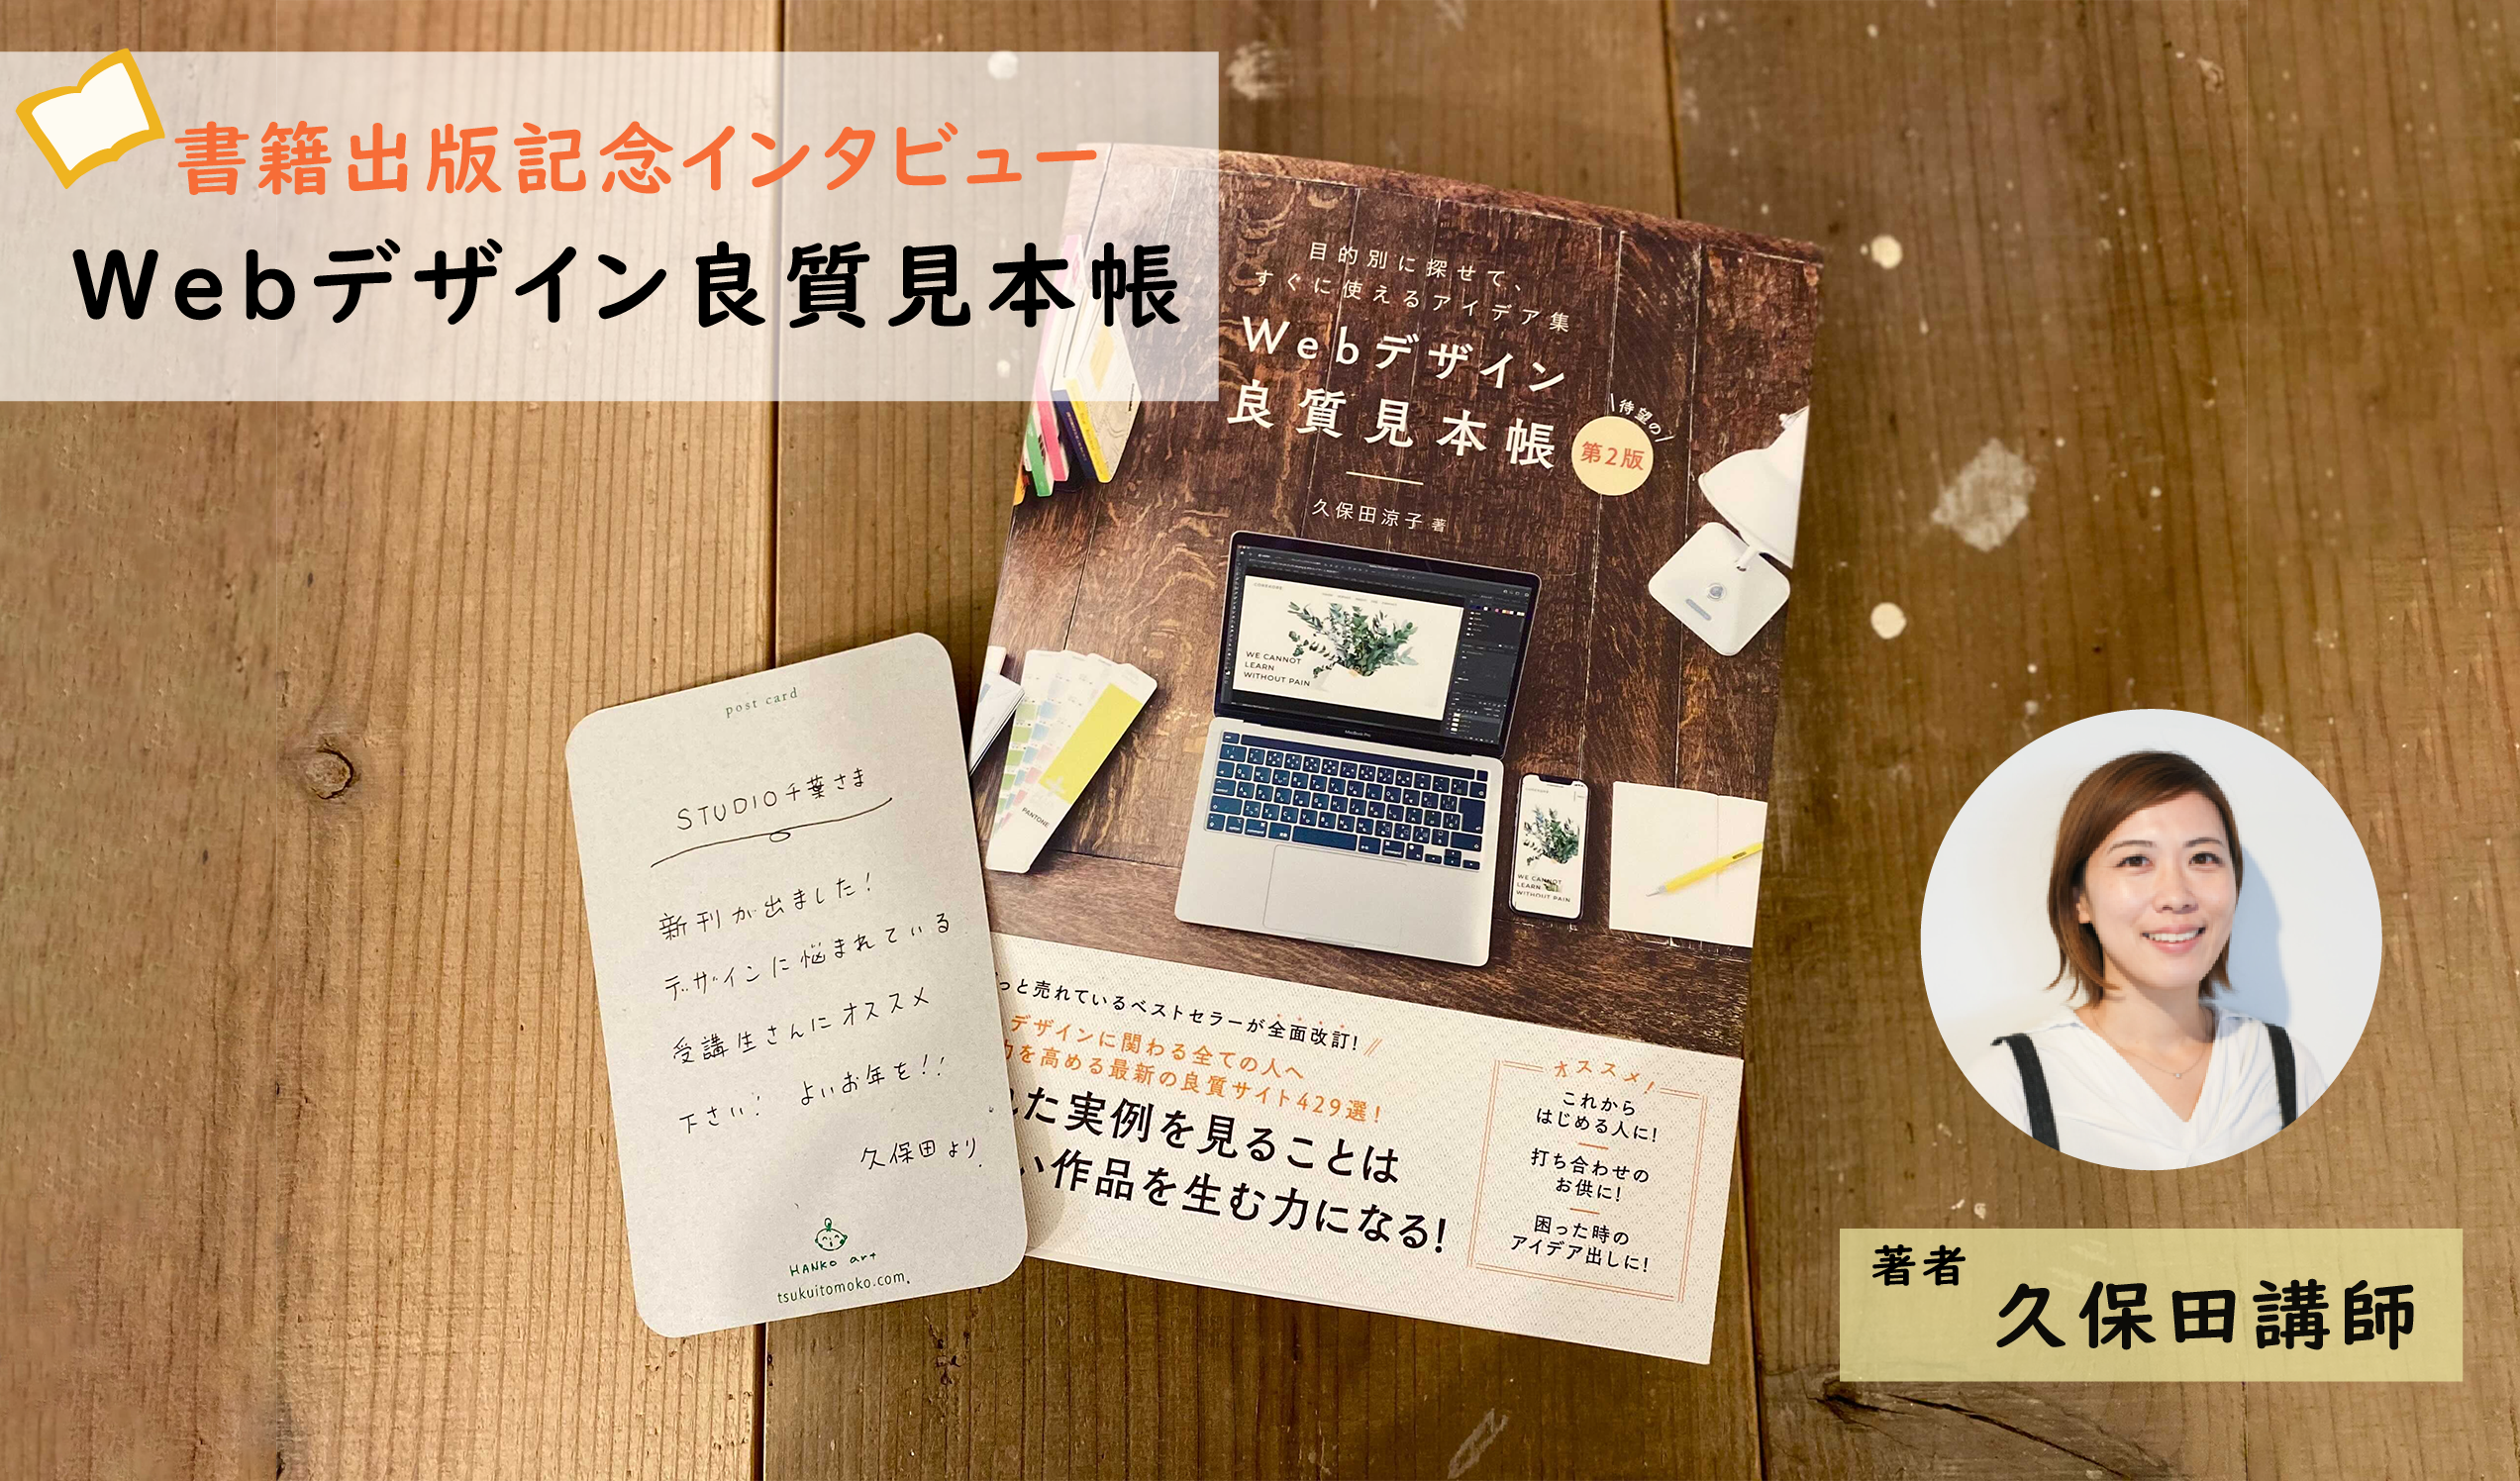 『Webデザイン良質見本帳 』著者 久保田講師から応援メッセージが届きました！！